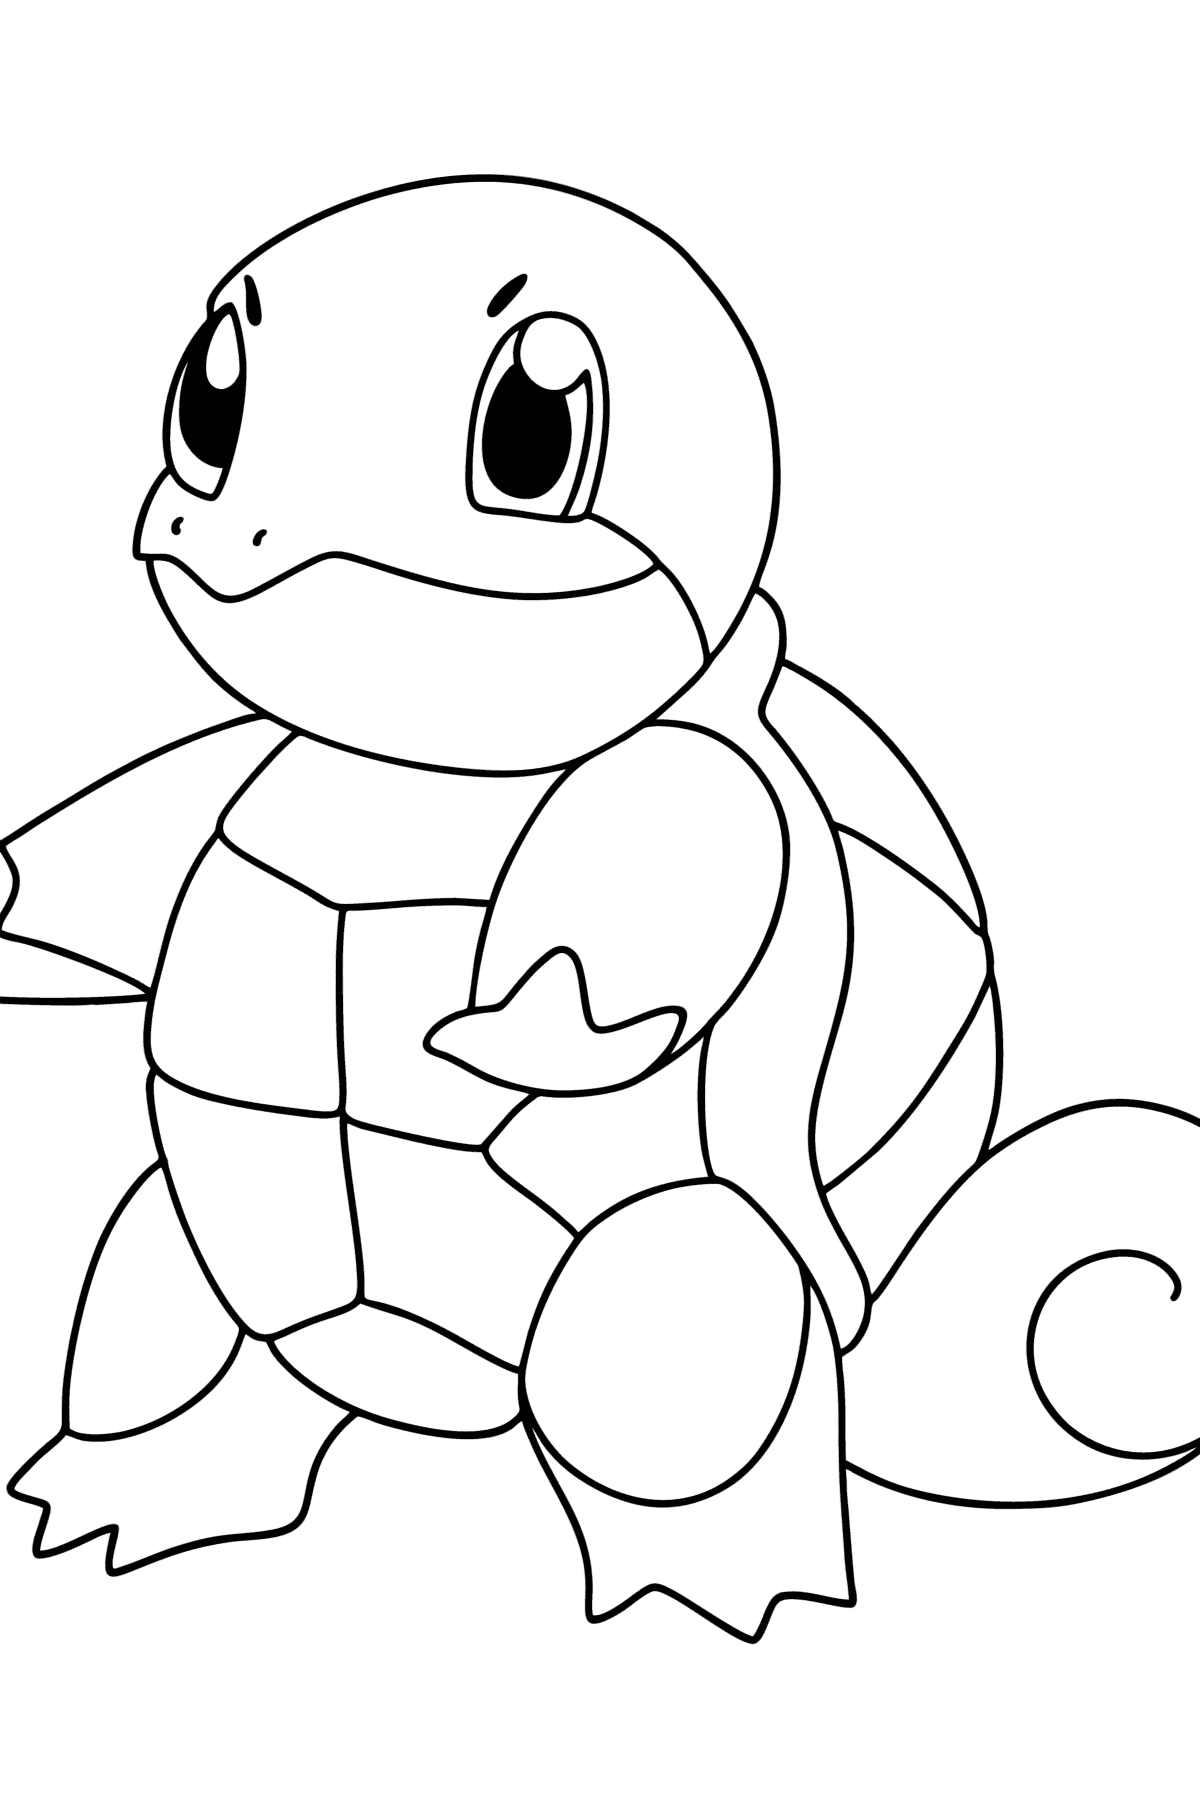 Boyama sayfası Pokémon Go Squirtle - Boyamalar çocuklar için